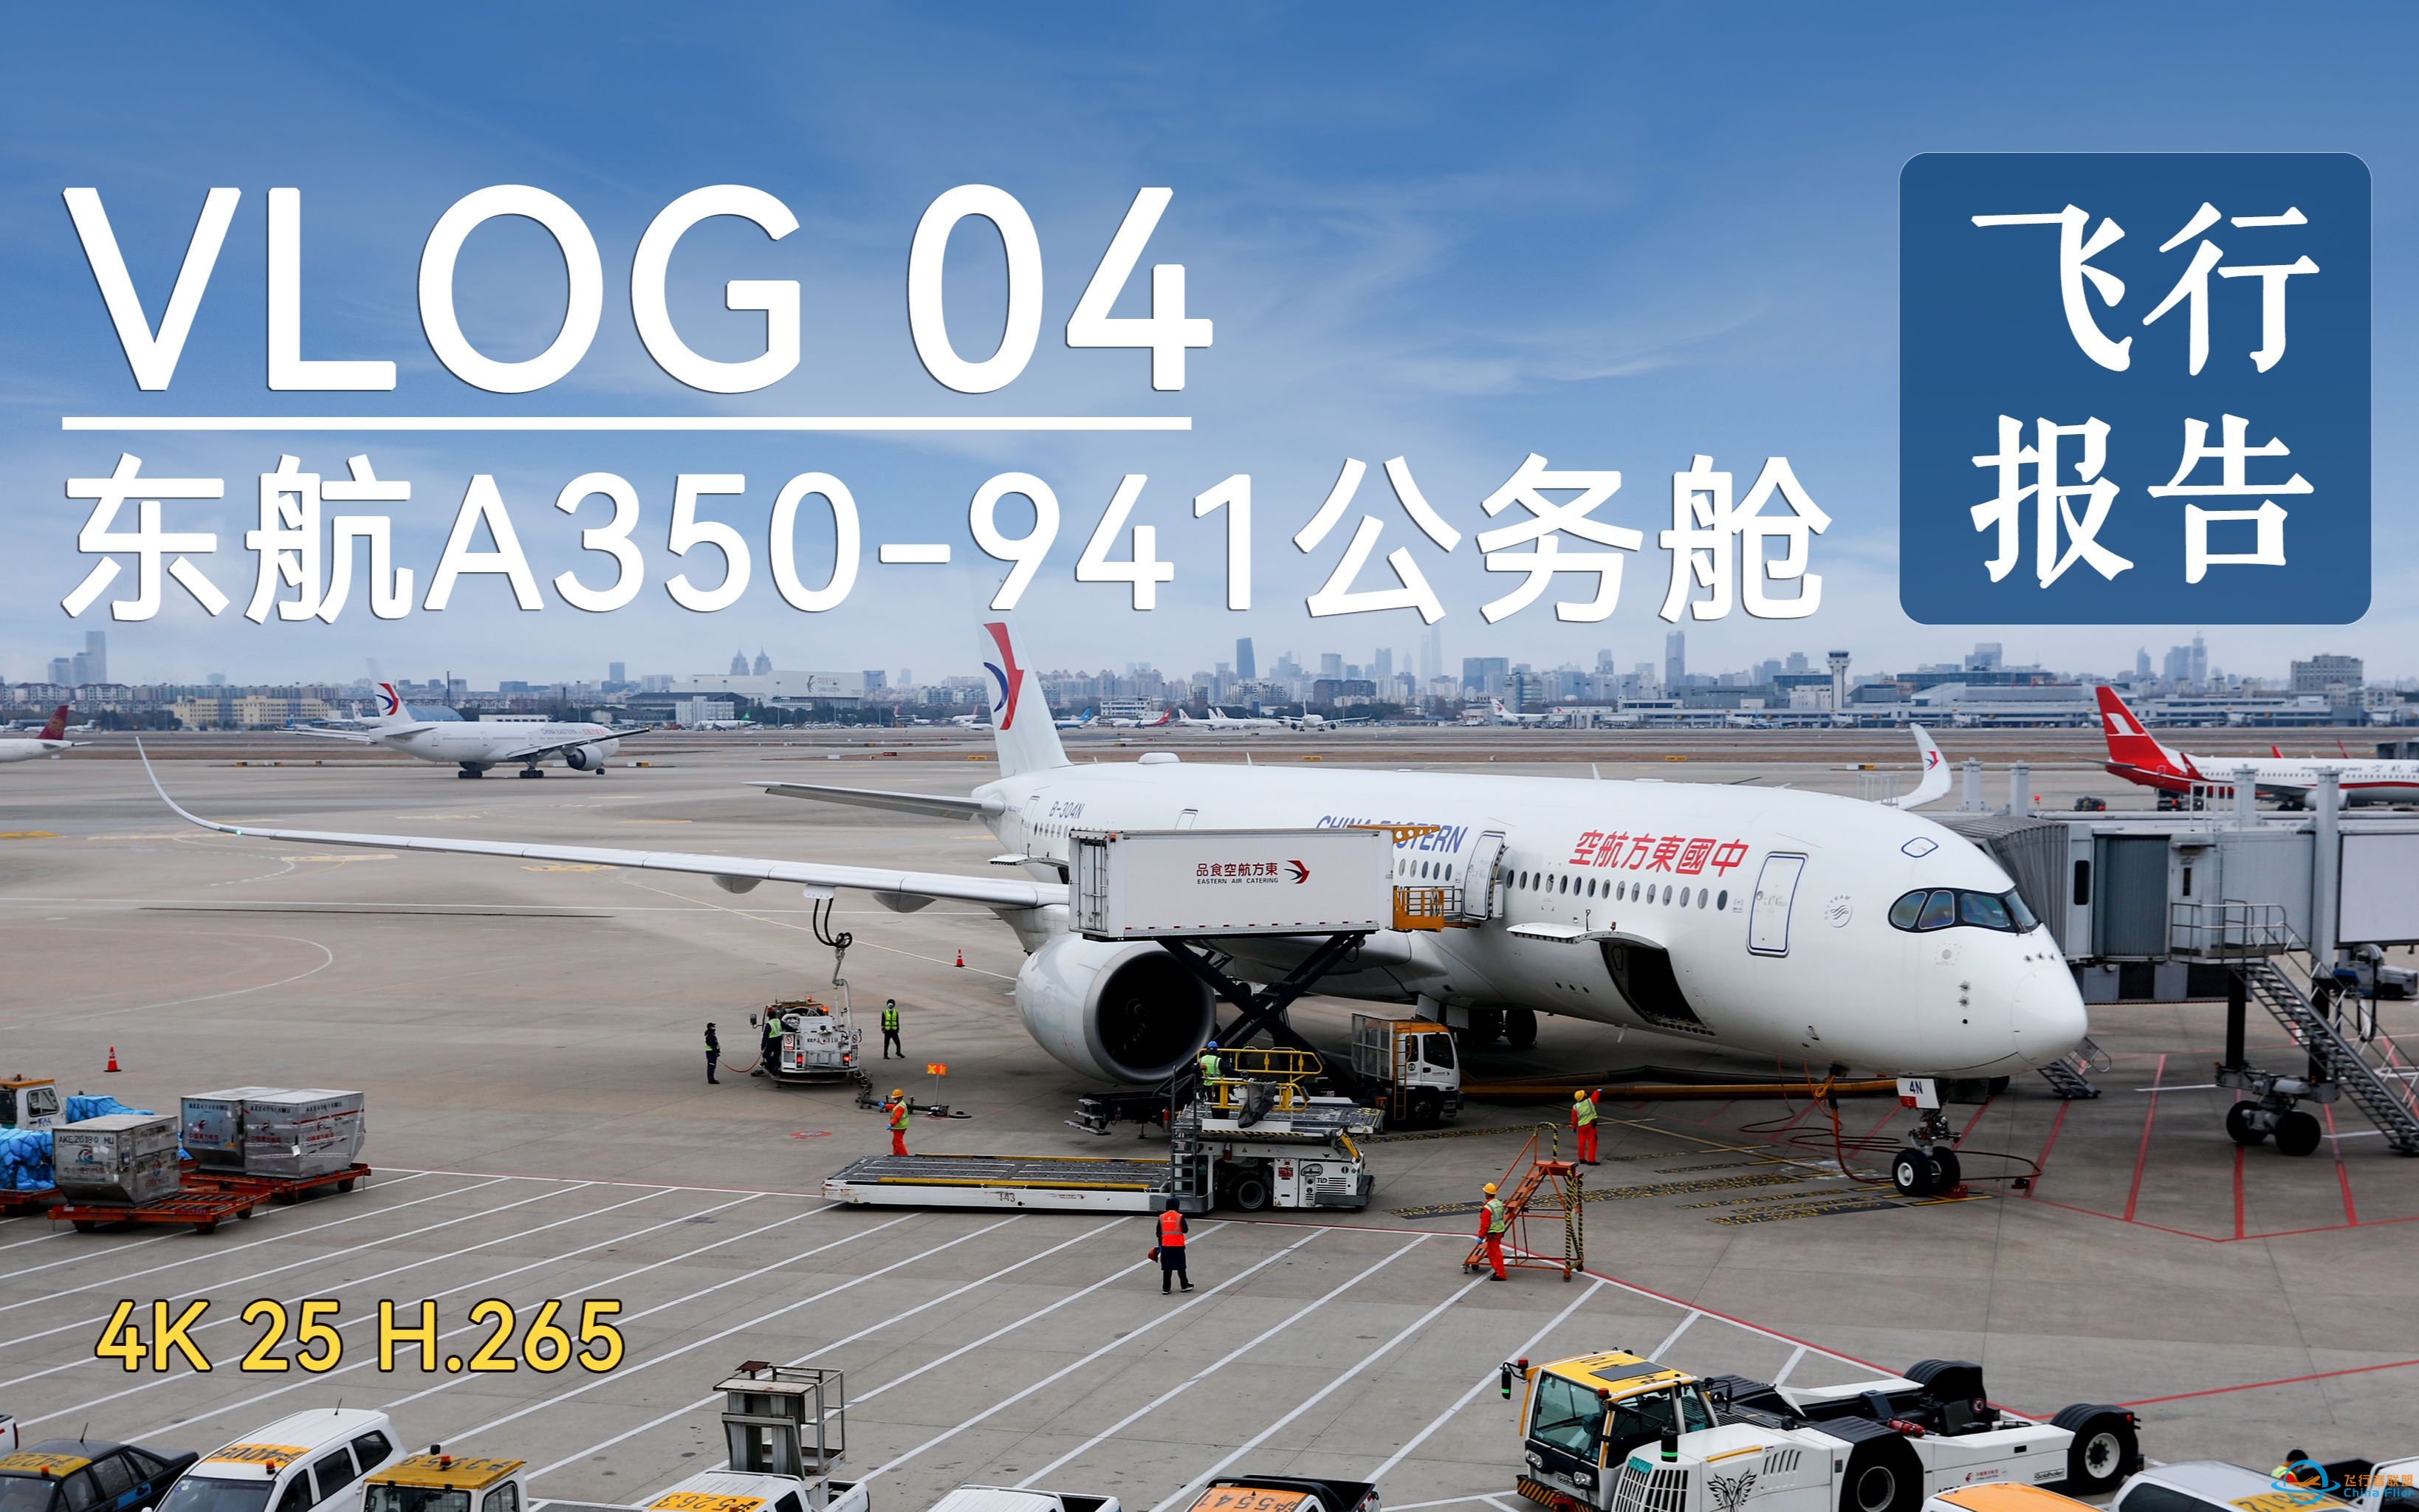 【vlog 04】国内公务舱天花板？东航A350-900飞行体验-1956 